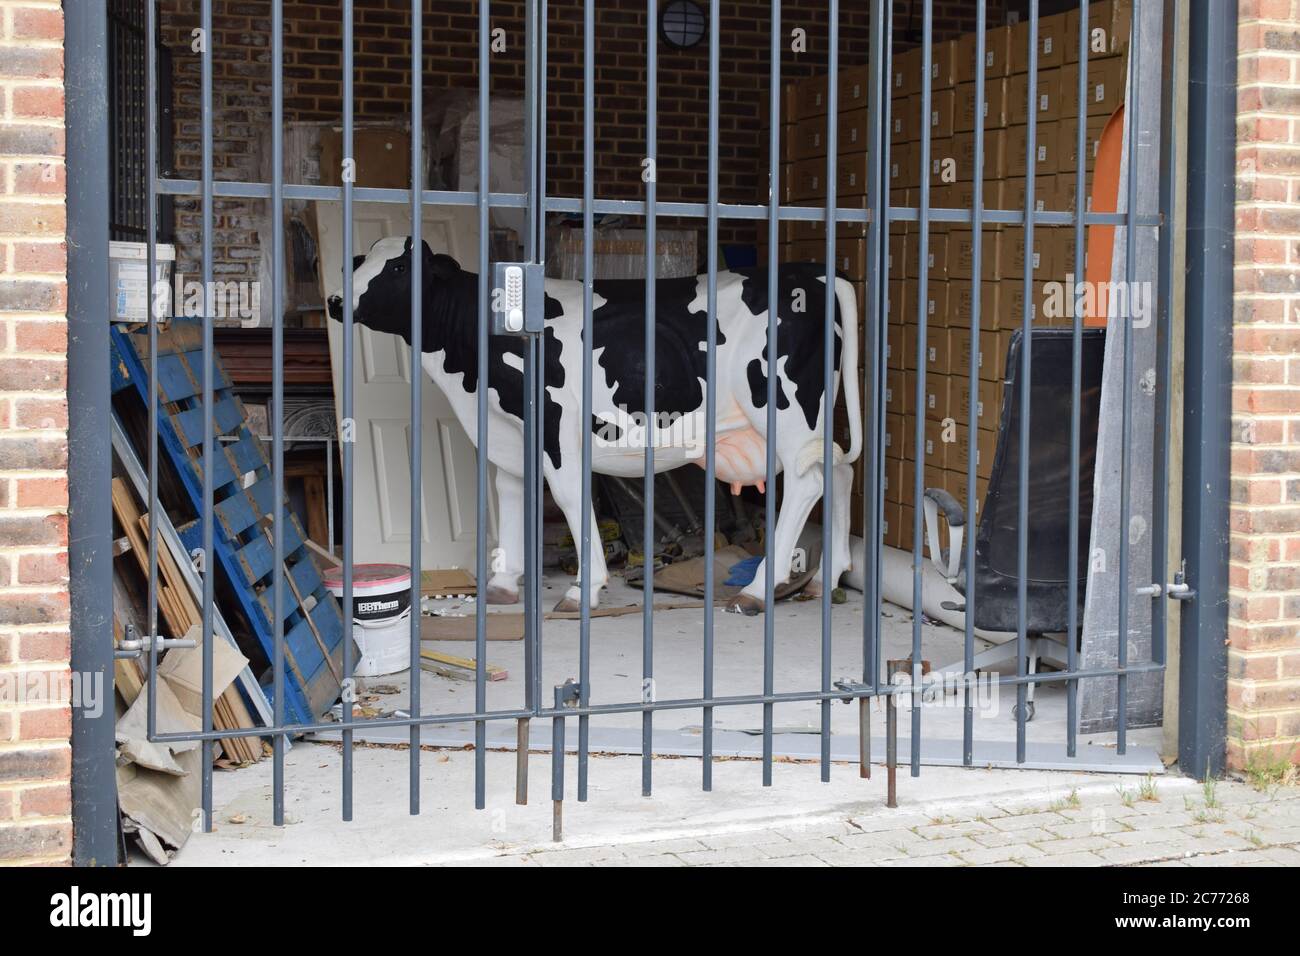 Vaca encontrada en el garaje del sur de Londres. Foto de stock